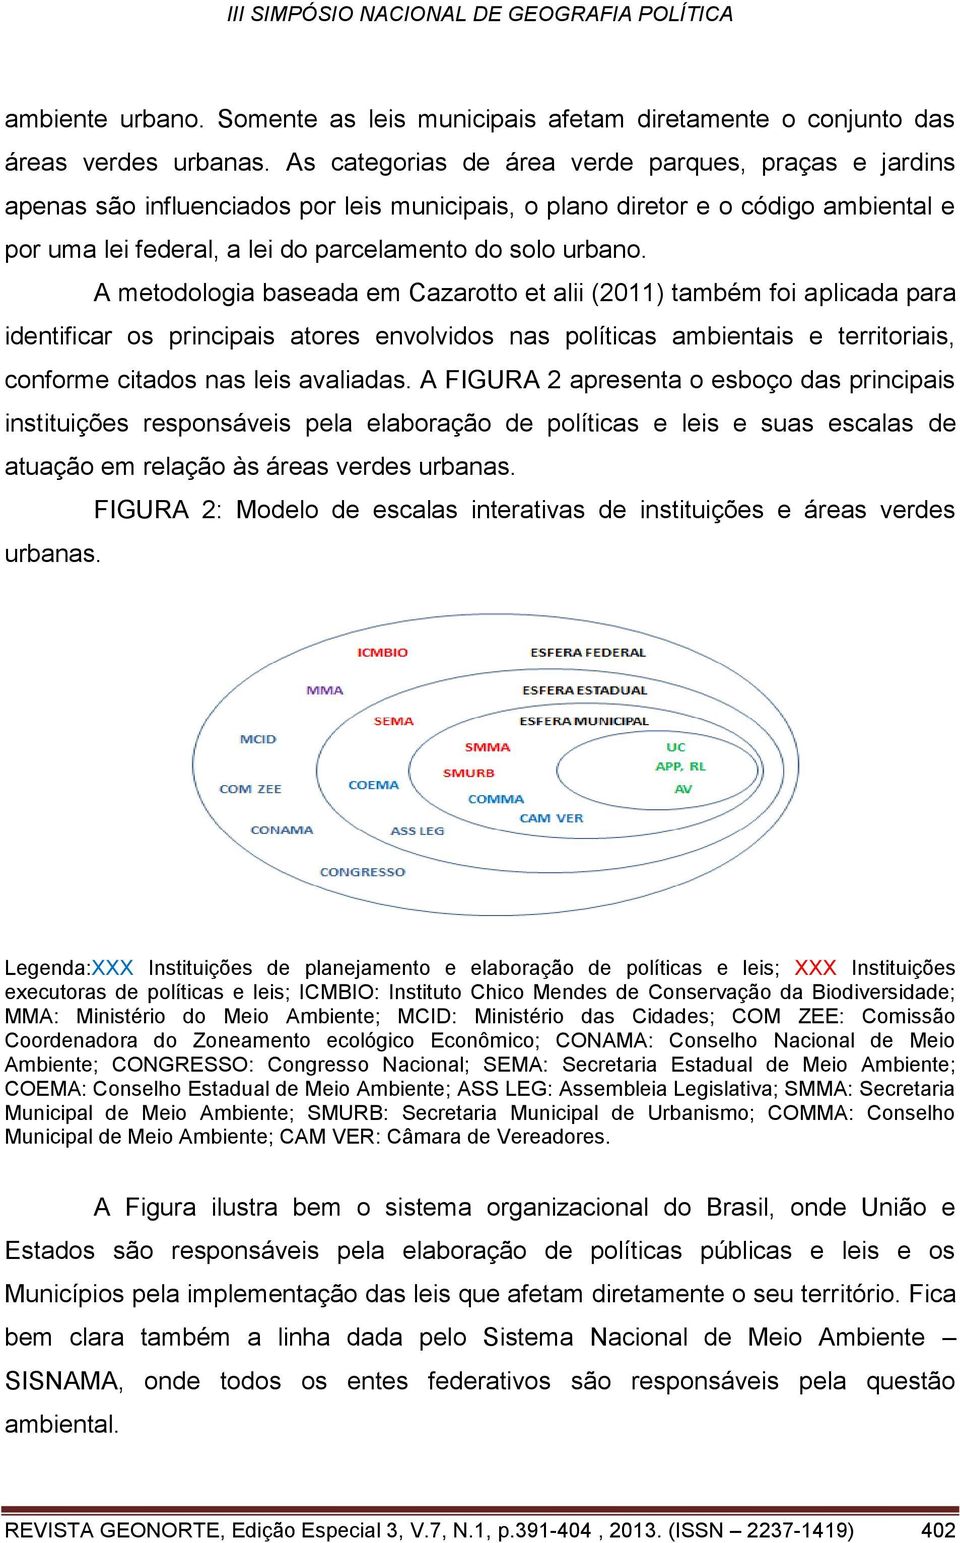 A metodologia baseada em Cazarotto et alii (2011) também foi aplicada para identificar os principais atores envolvidos nas políticas ambientais e territoriais, conforme citados nas leis avaliadas.